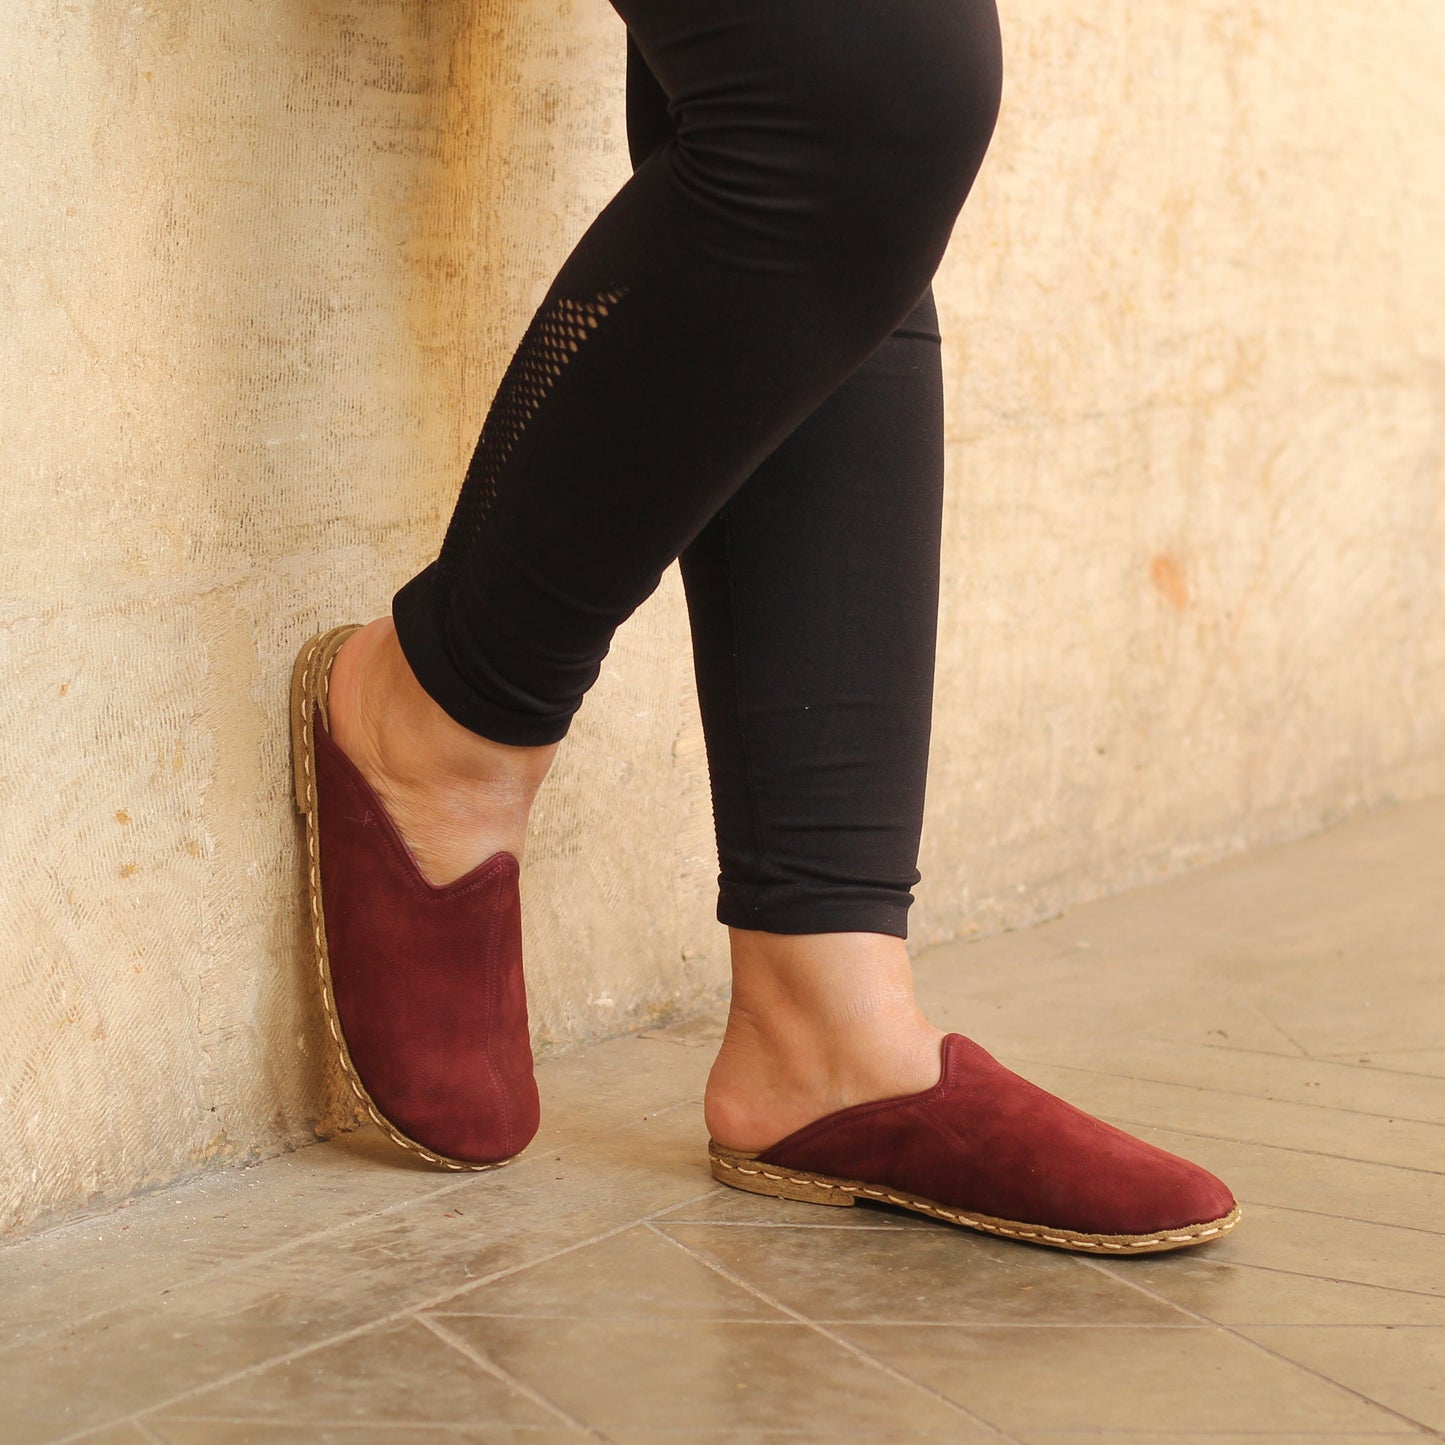 Sheepskin slippers - Winter Slippers - Barefoot Slipper - Close Toed Slippers - Claret Red Nubuck Leather - Copper Rivet - For Women